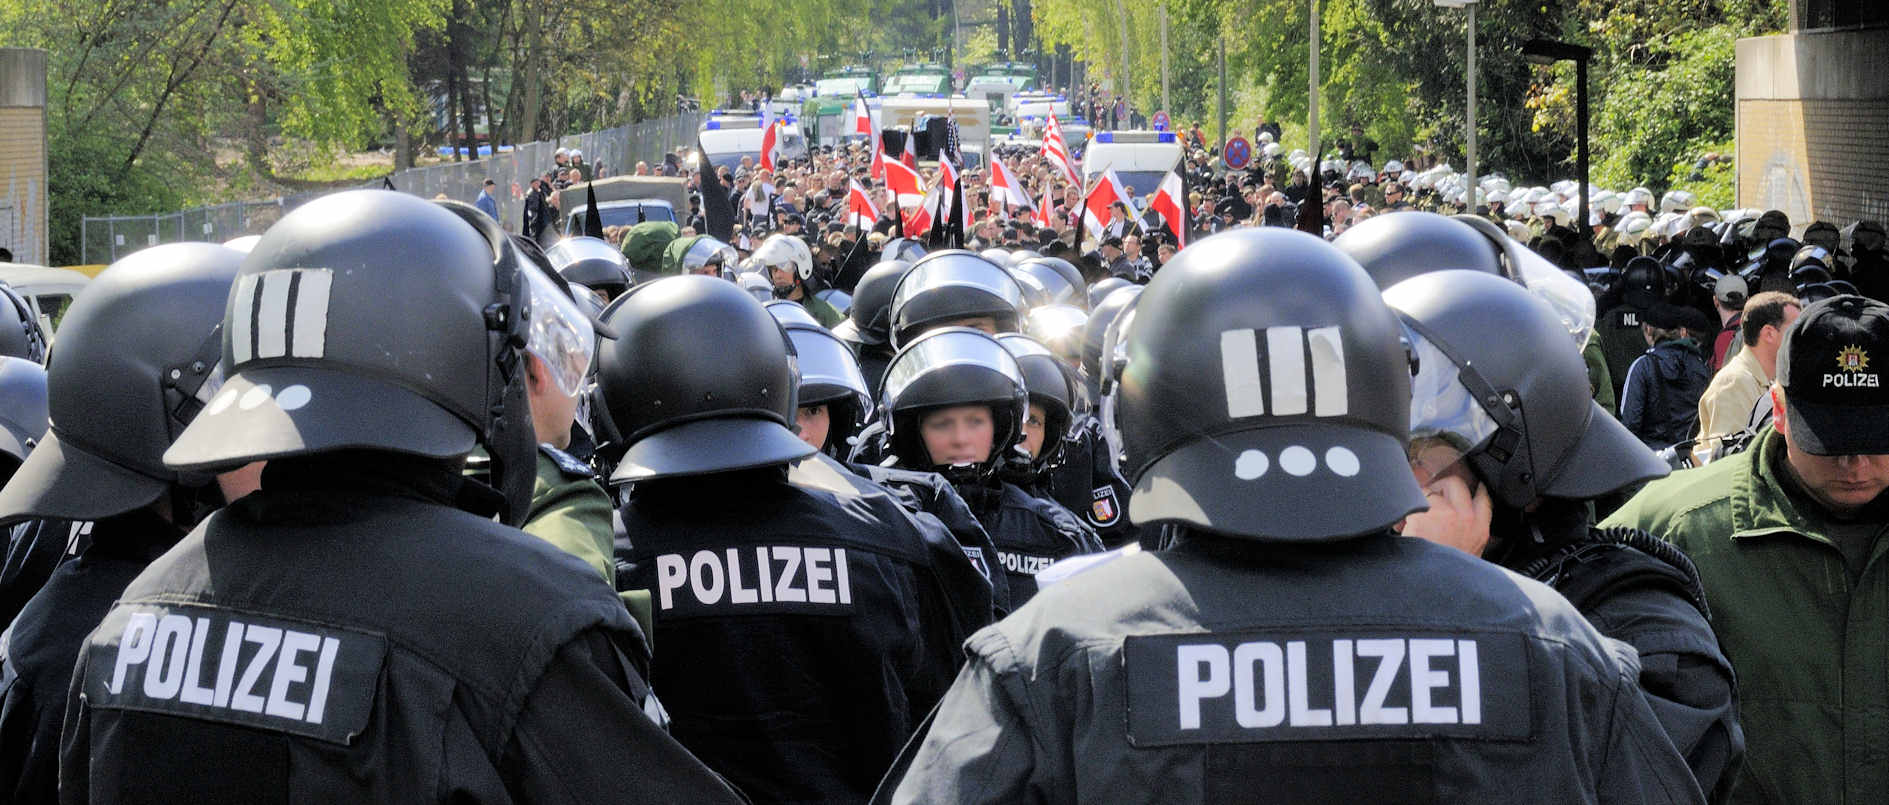 _DSC3772 Nazidemonstration in Hamburg Barmbek - vorne Polizei, hinten feiern Nazis einen Nationalen  | Nazidemonstration in Hamburg Barmbek - Proteste.